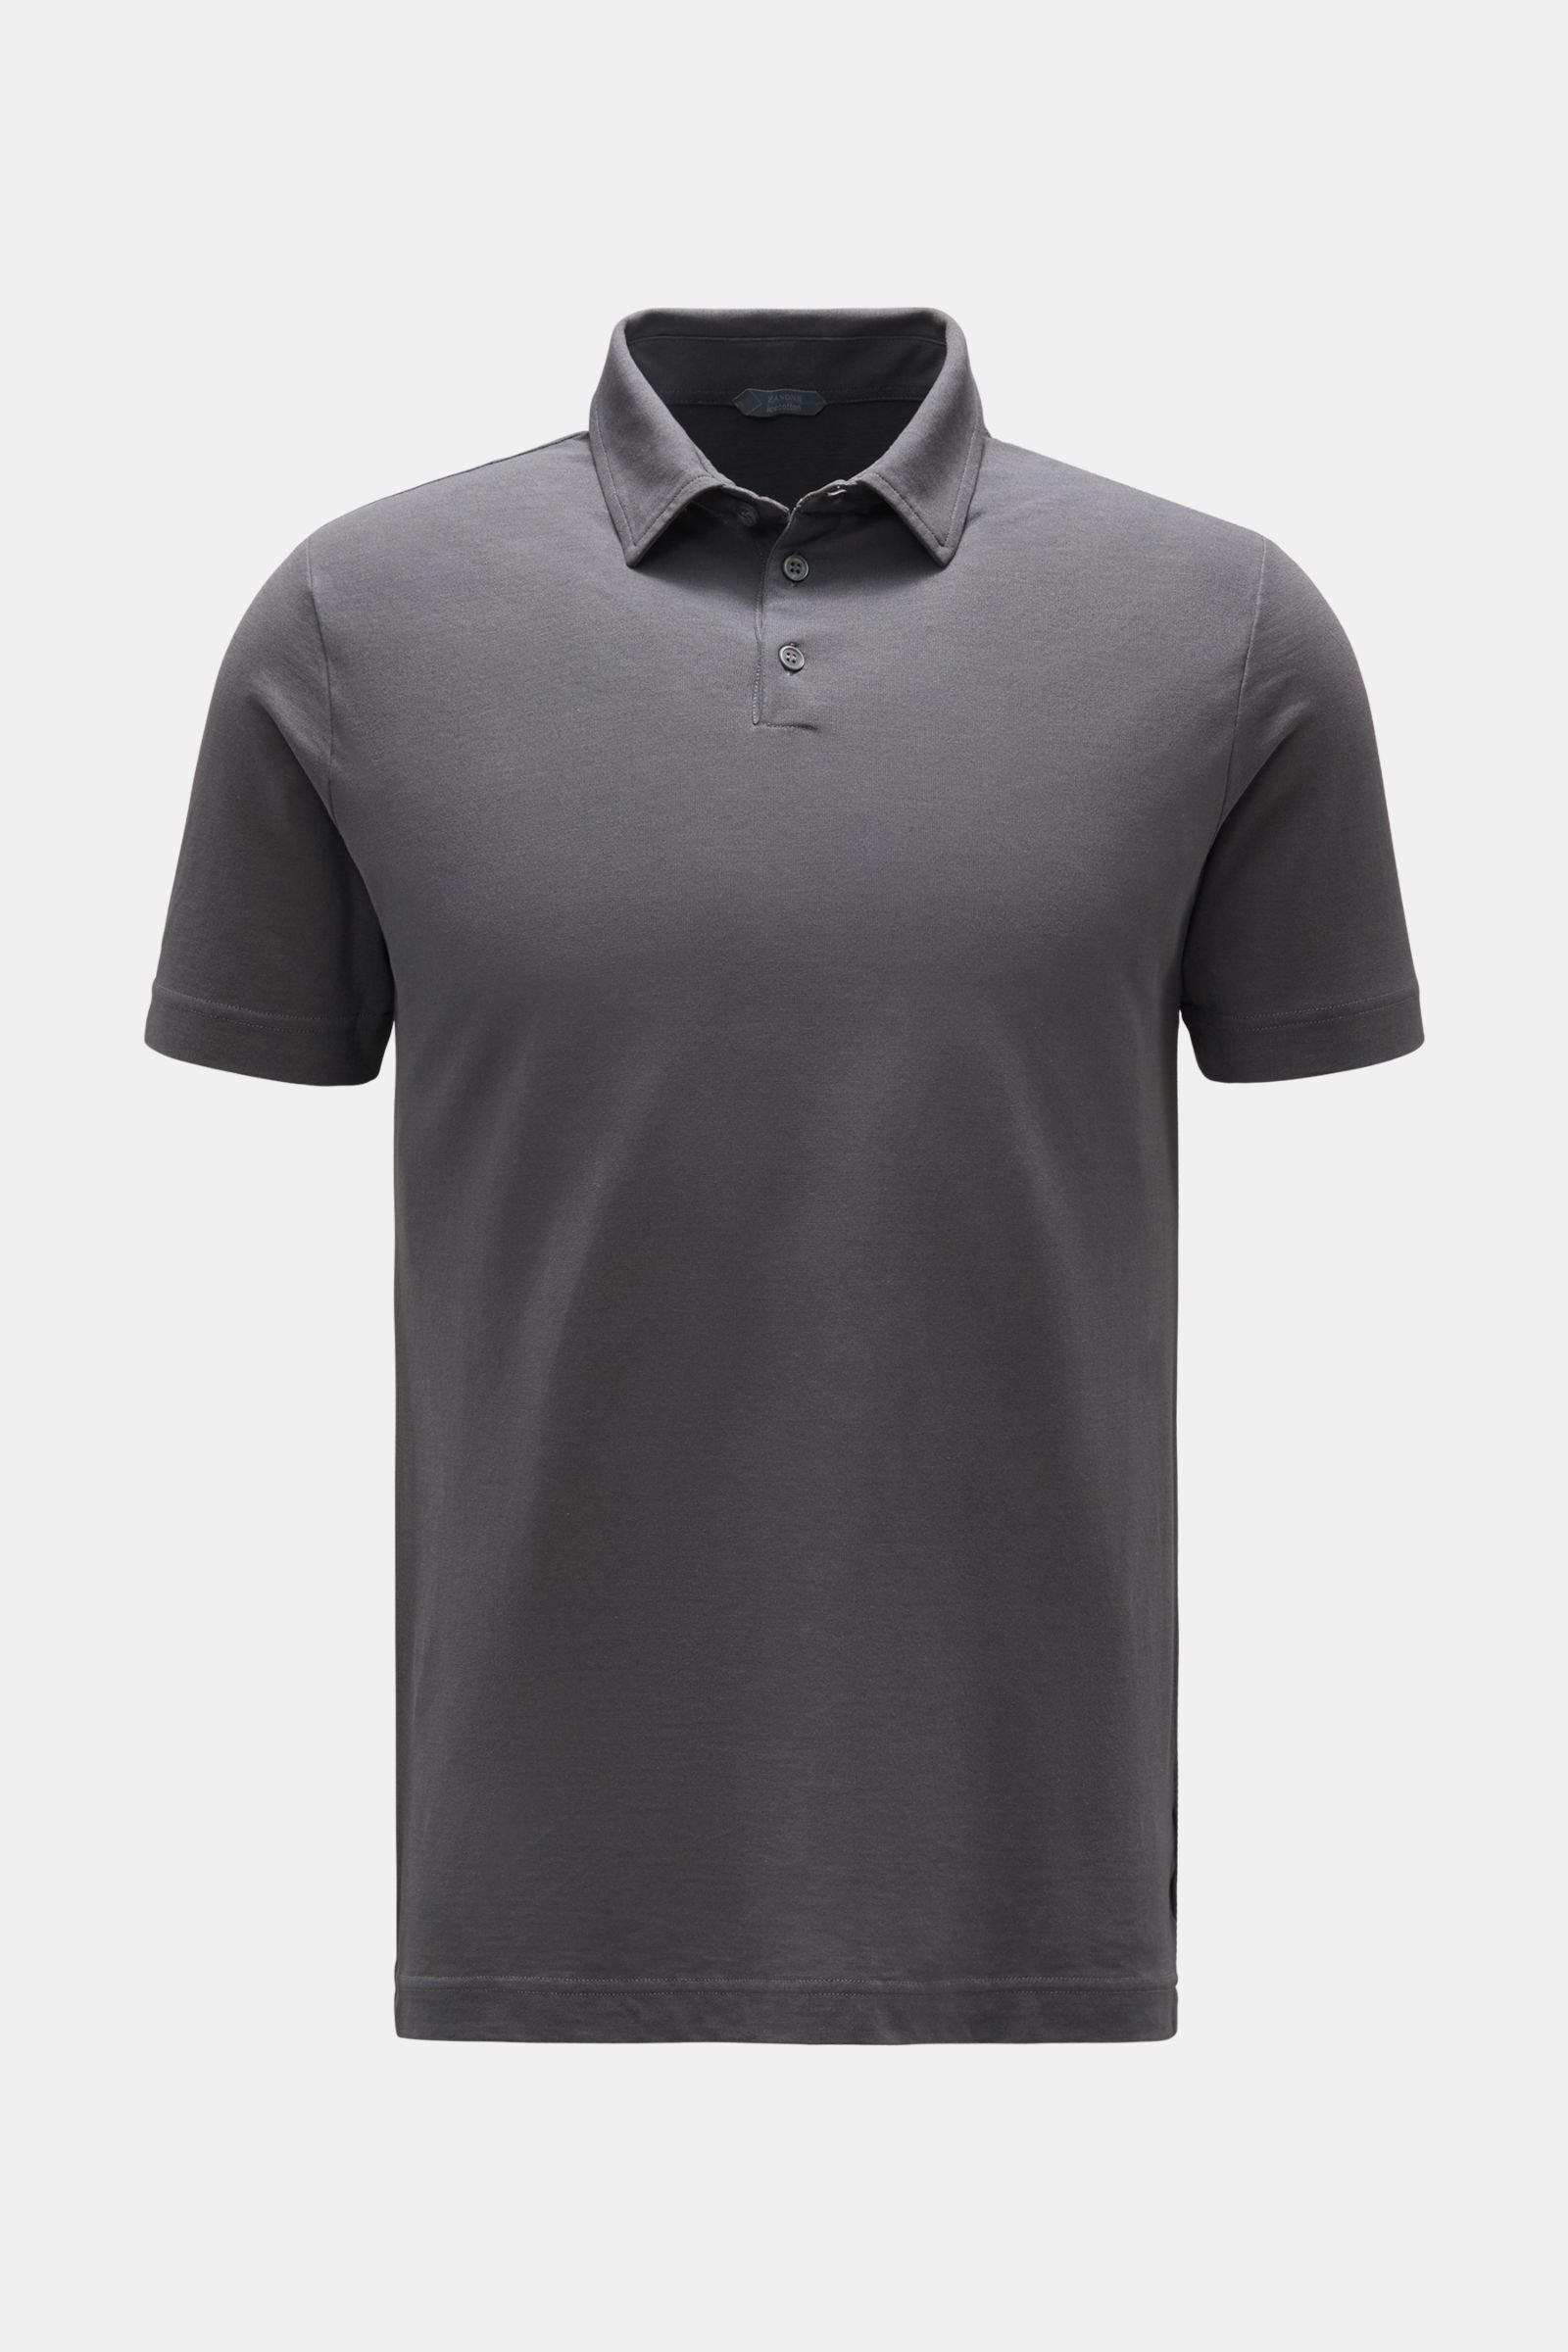 Jersey polo shirt dark grey